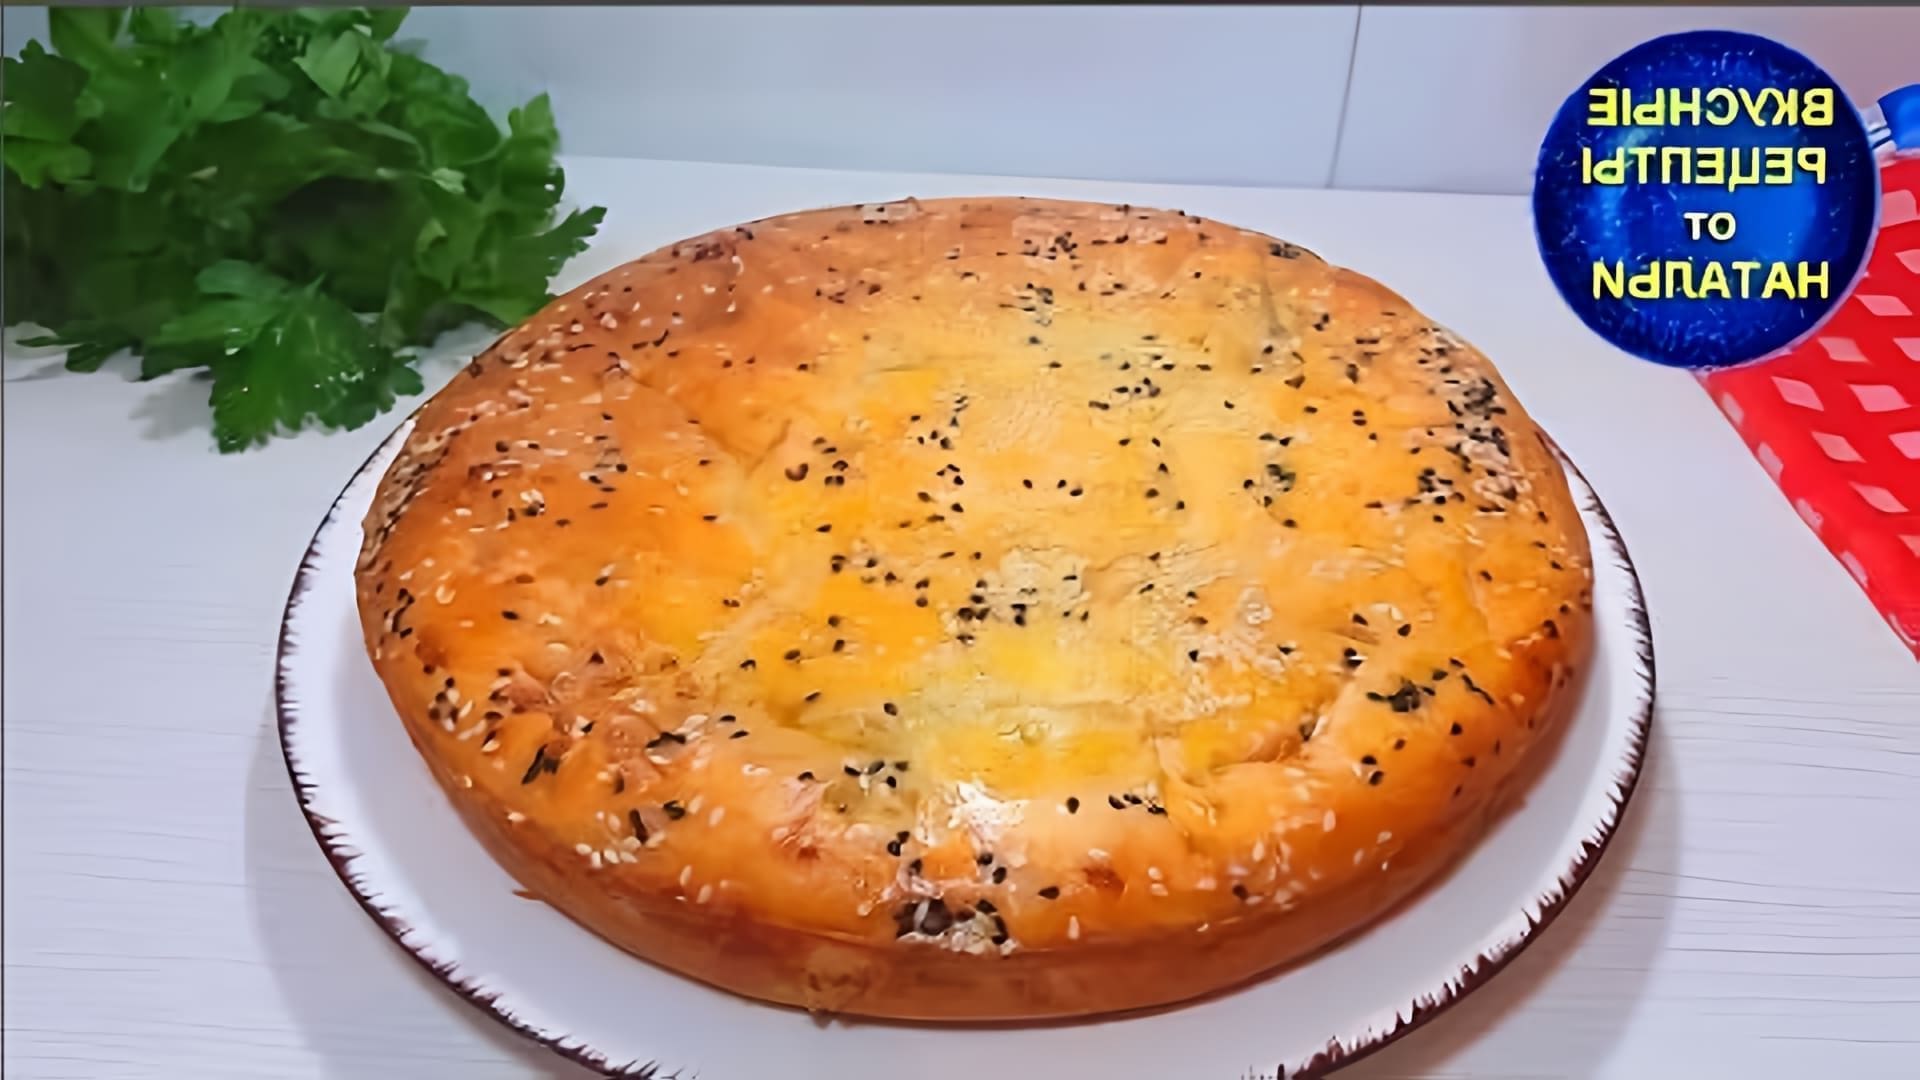 В этом видео демонстрируется рецепт приготовления заливного пирога с мясом и капустой